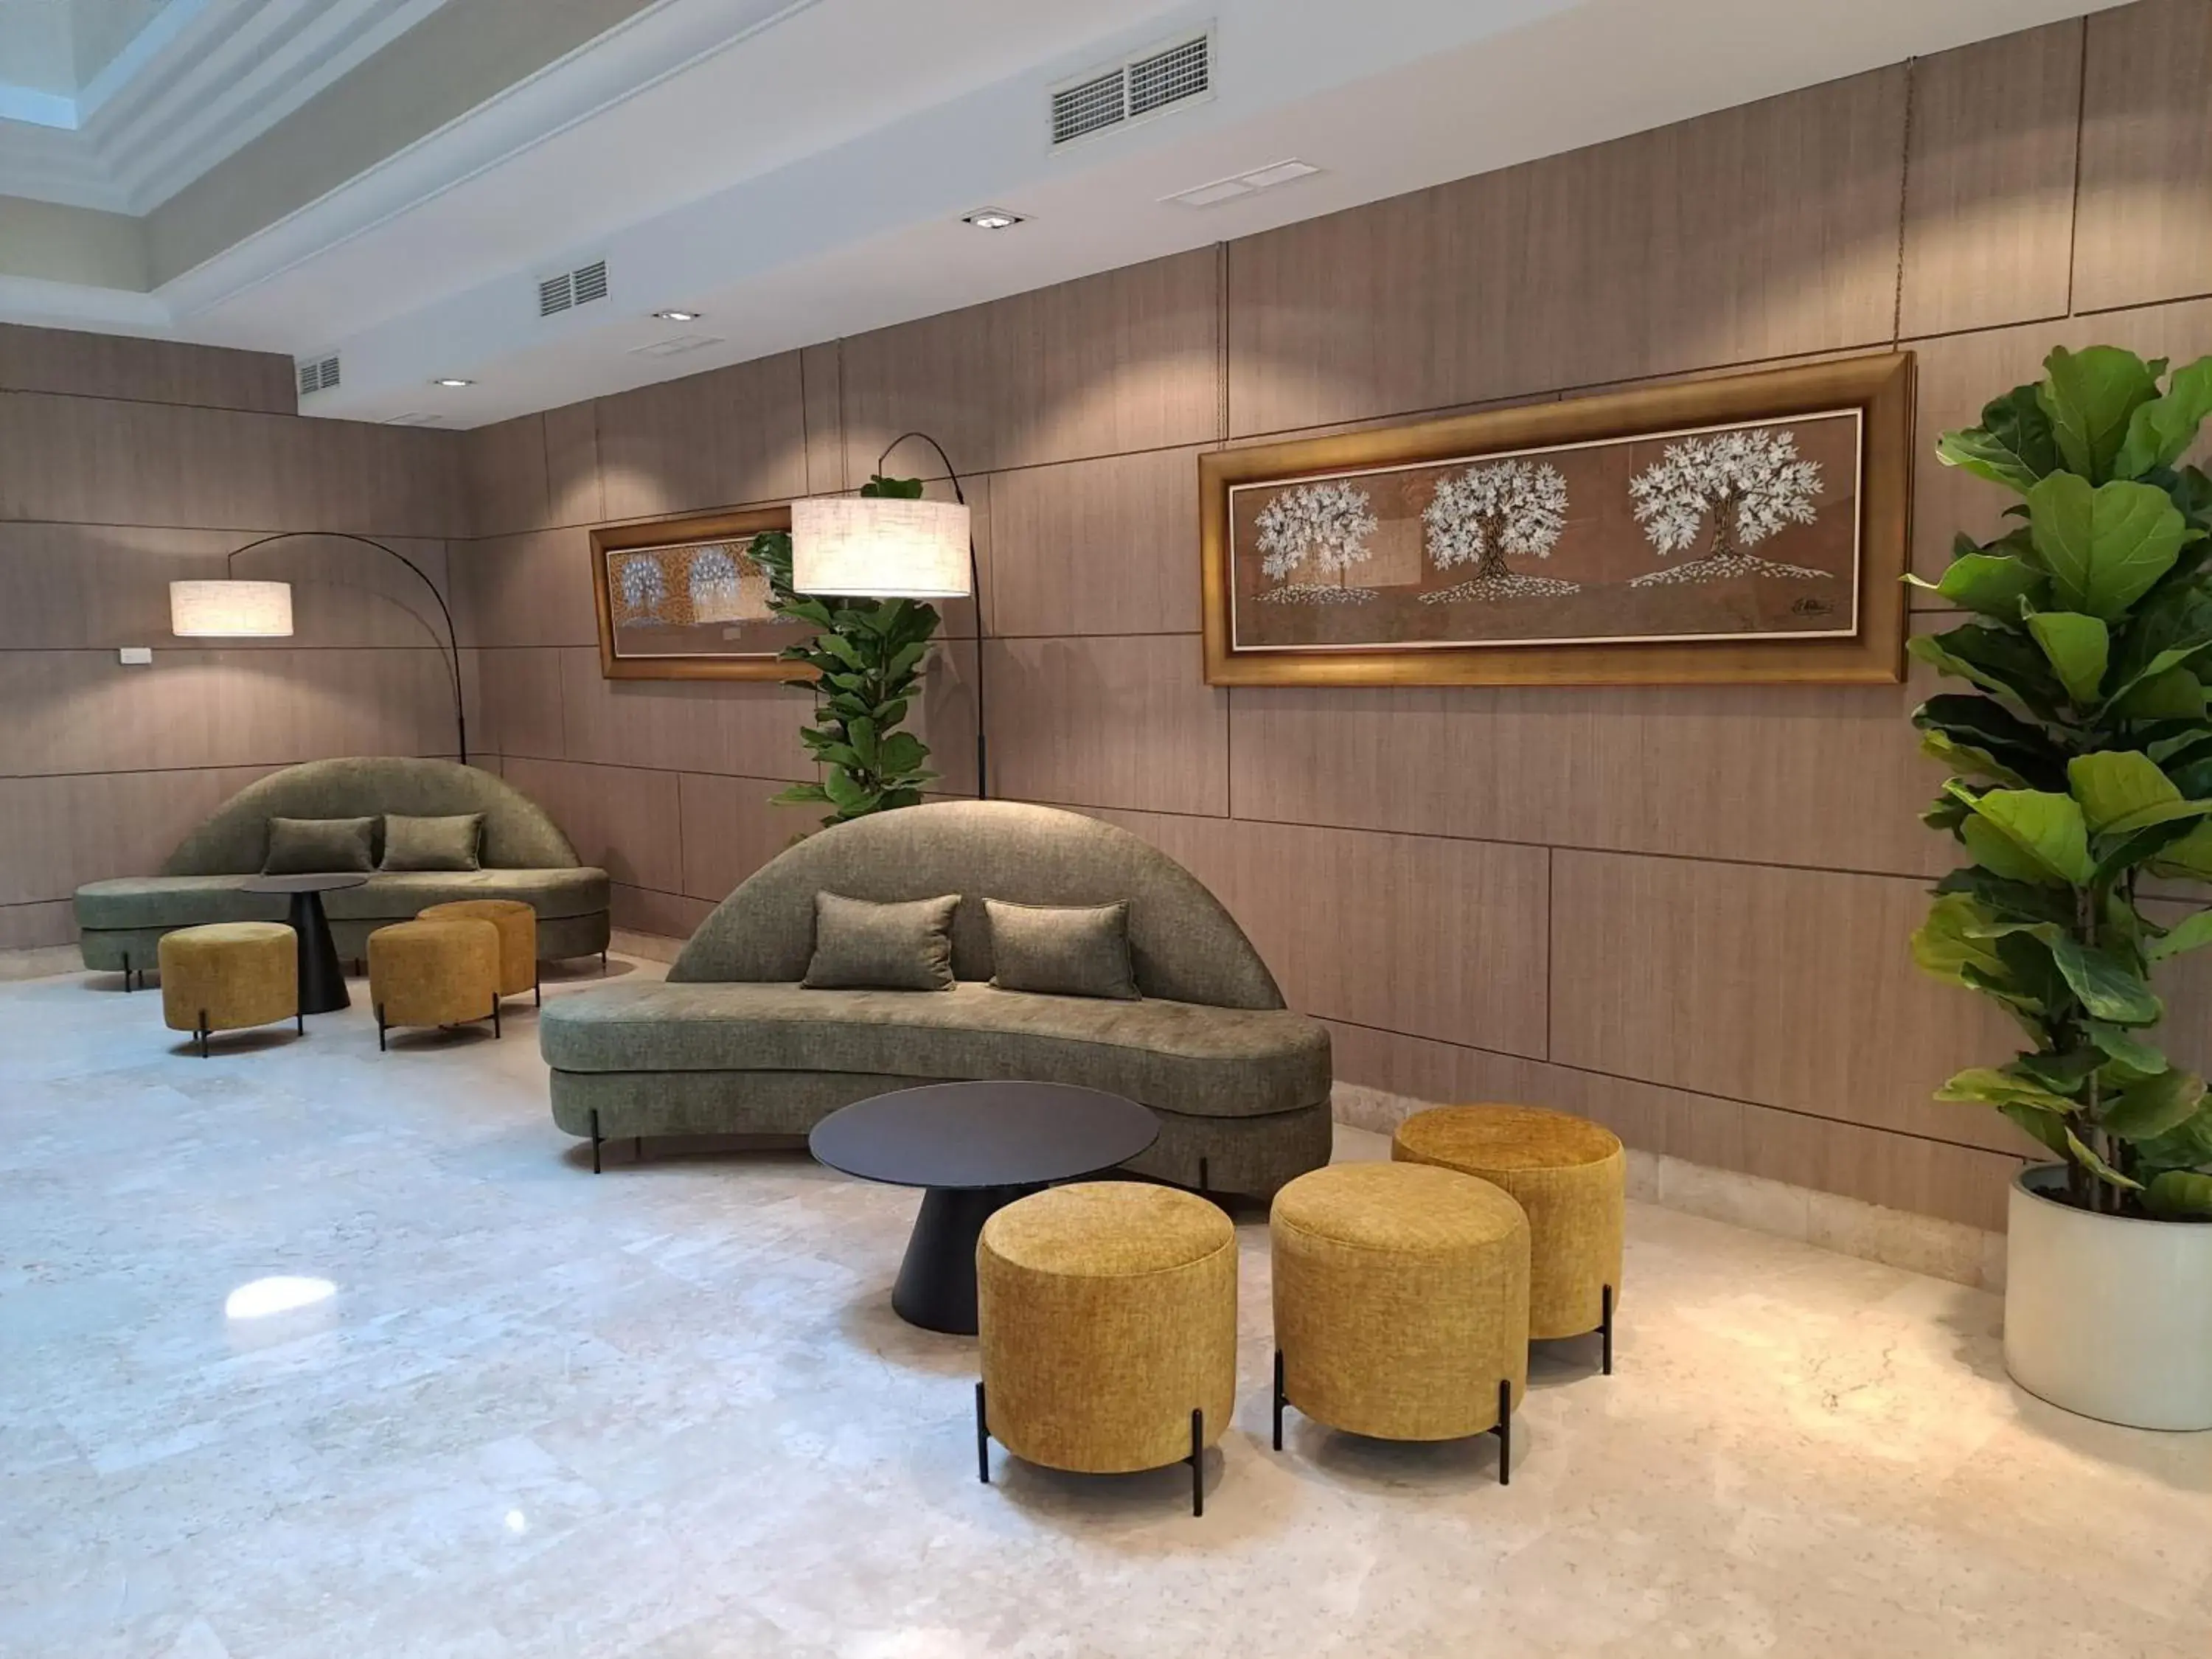 Lobby or reception, Lobby/Reception in Hotel Torremar